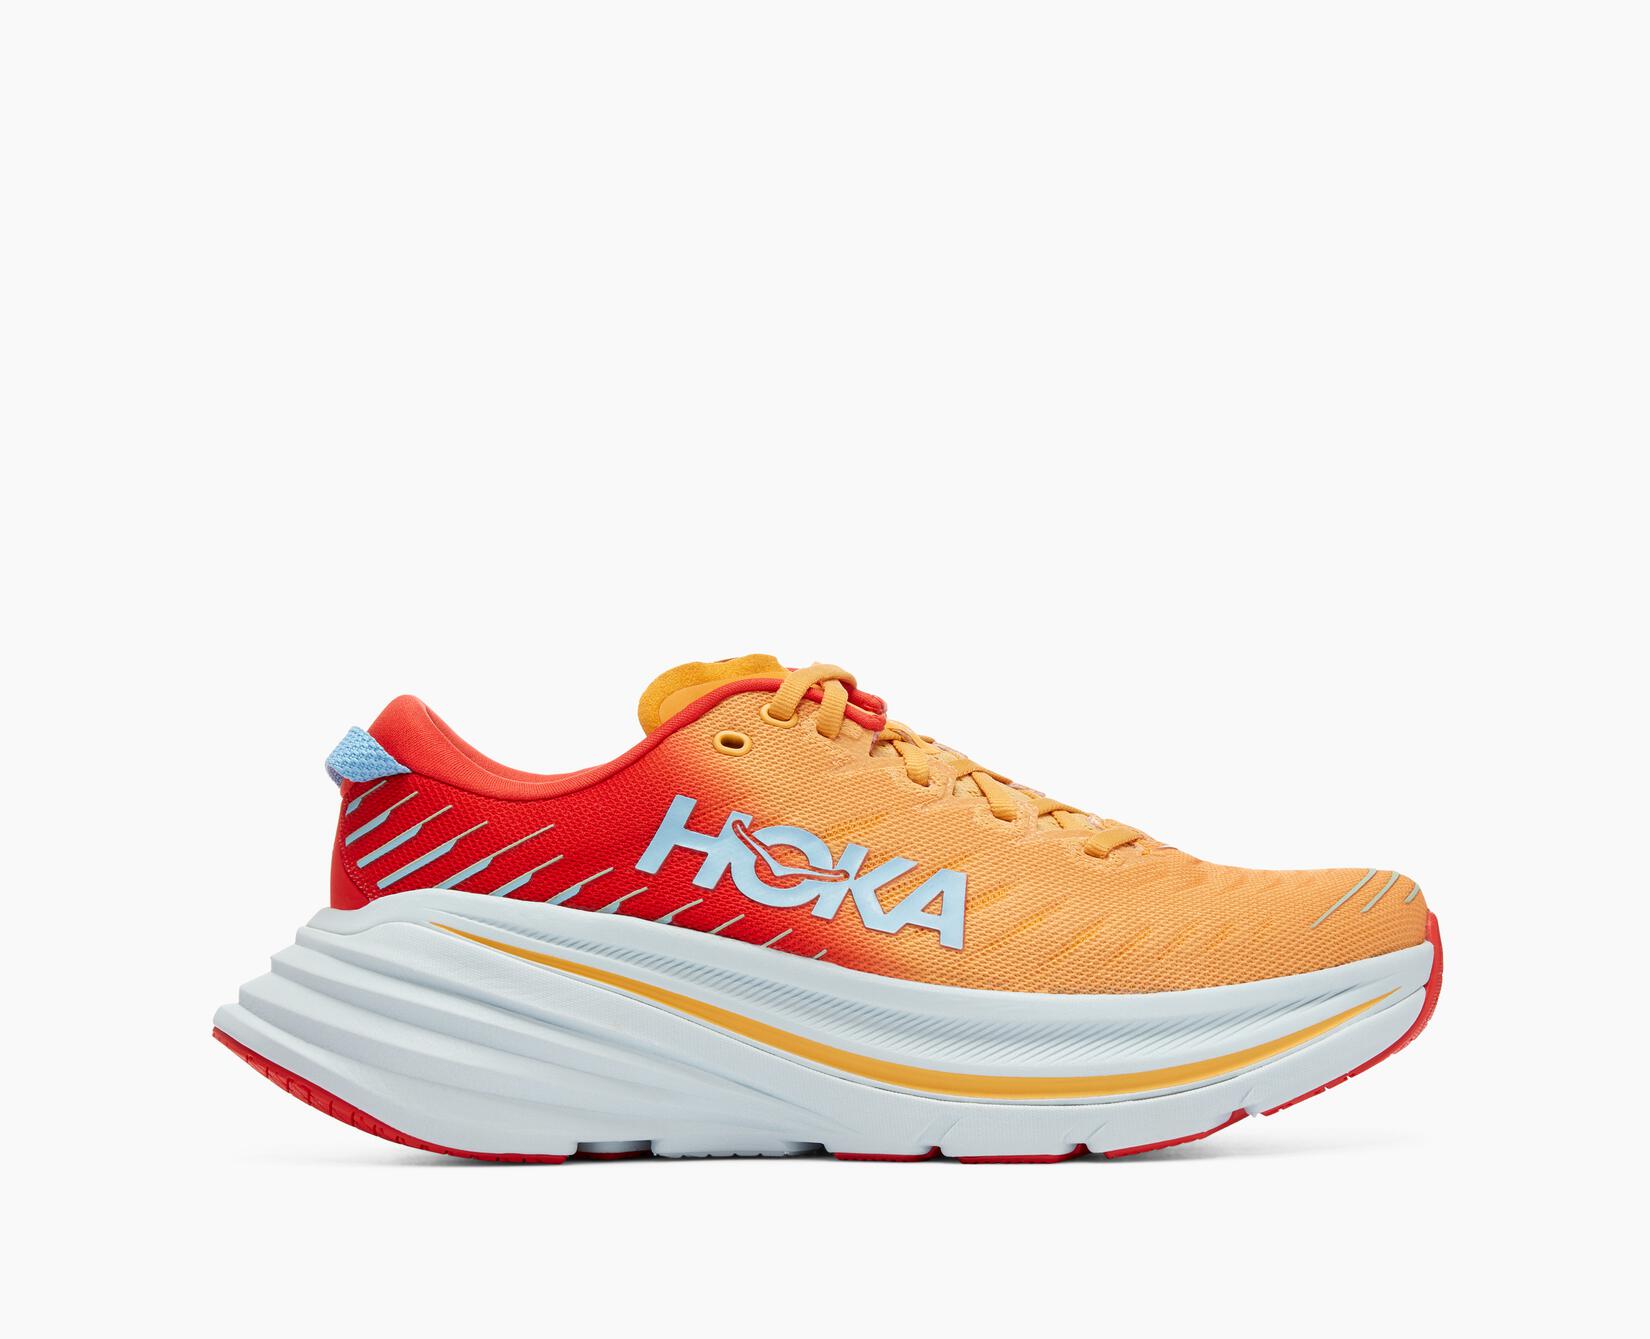 Hoka Running Shoes Review